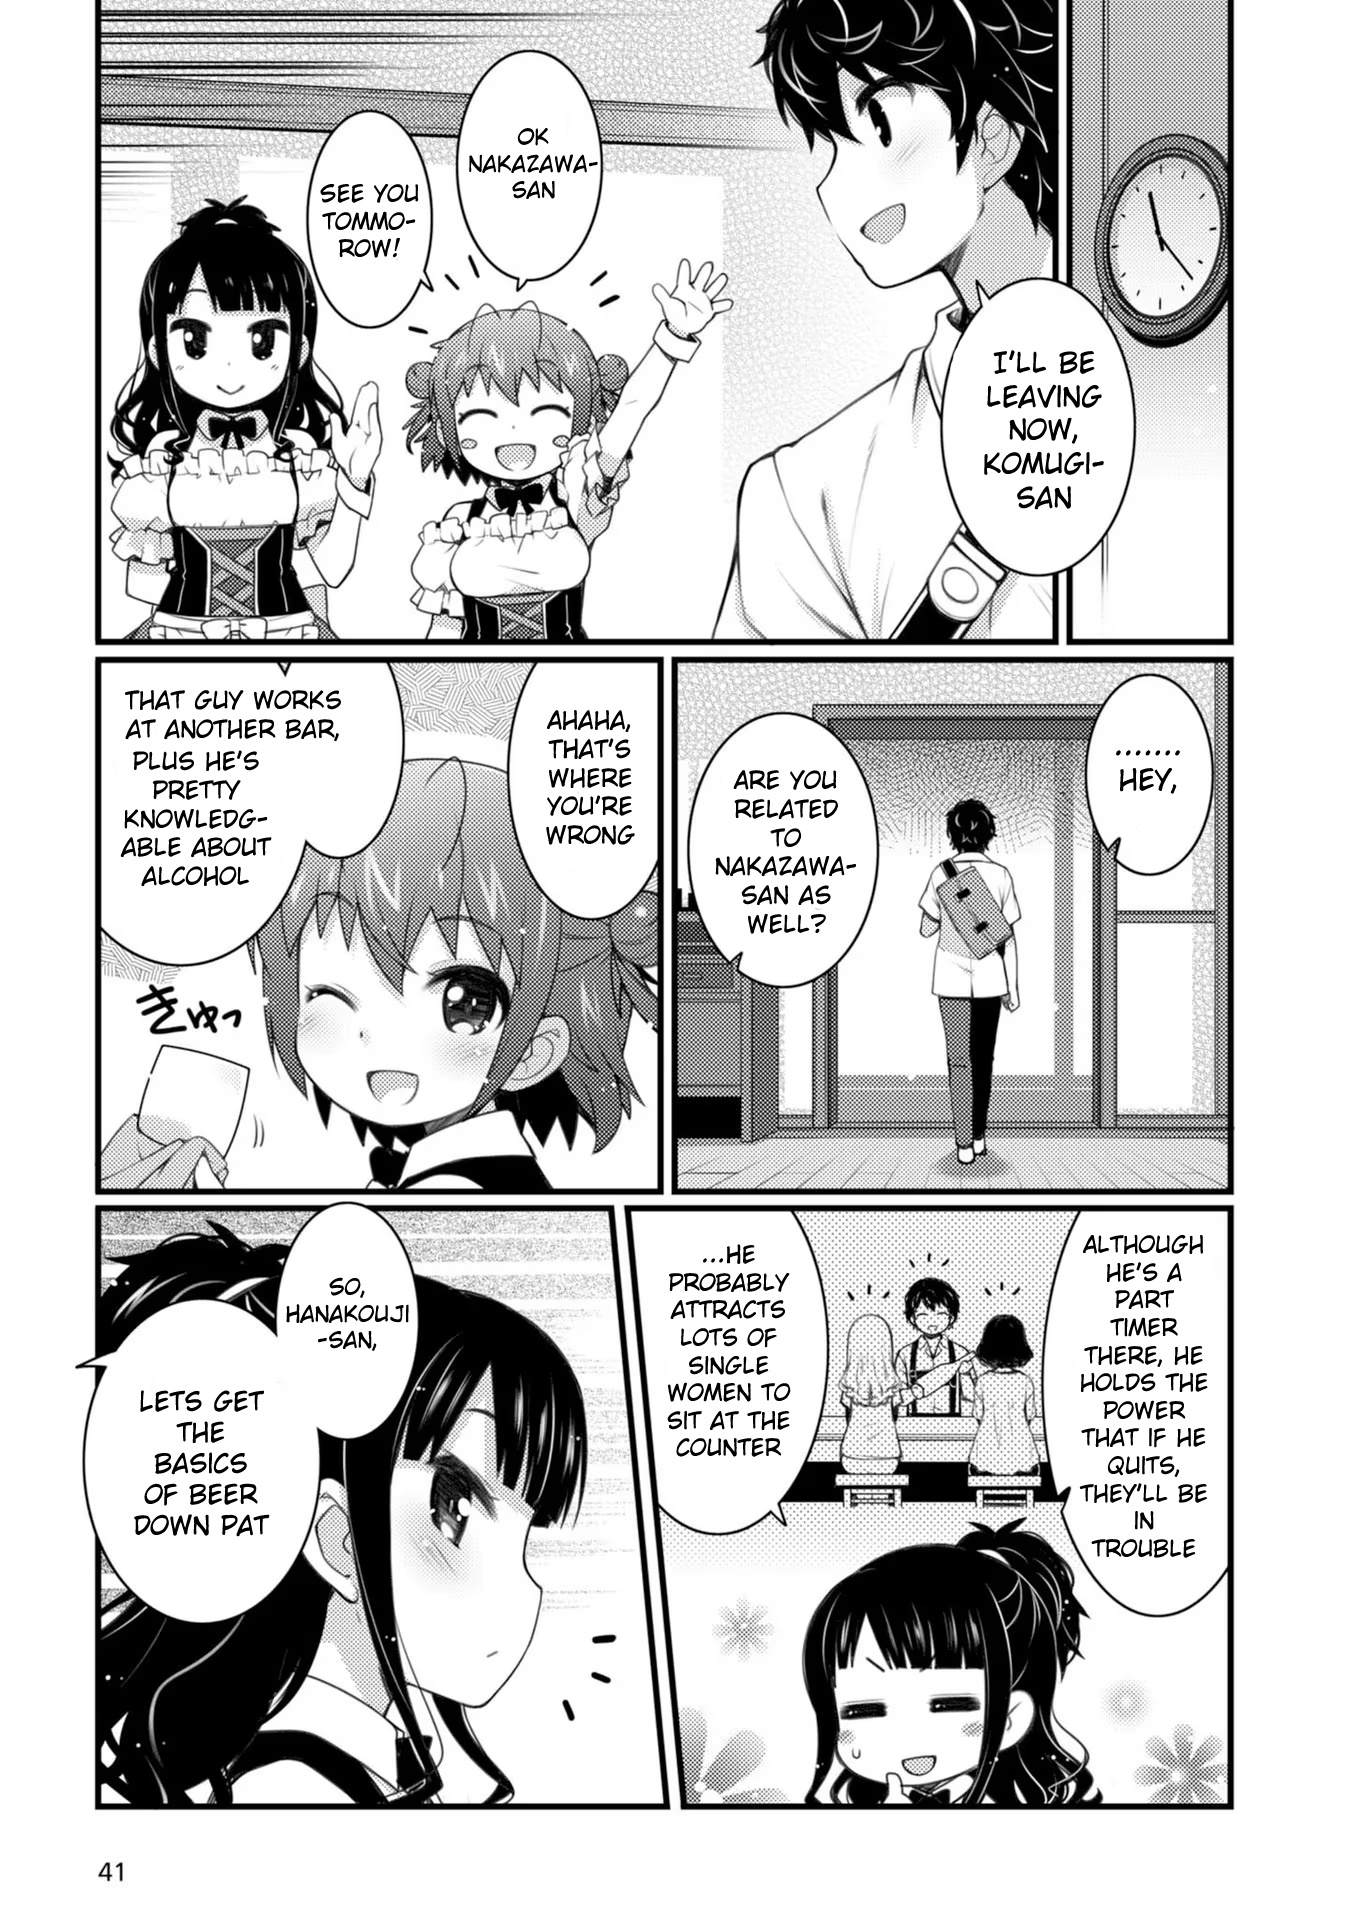 Bakkatsu! ～Bakushu Kassai～ - Page 1